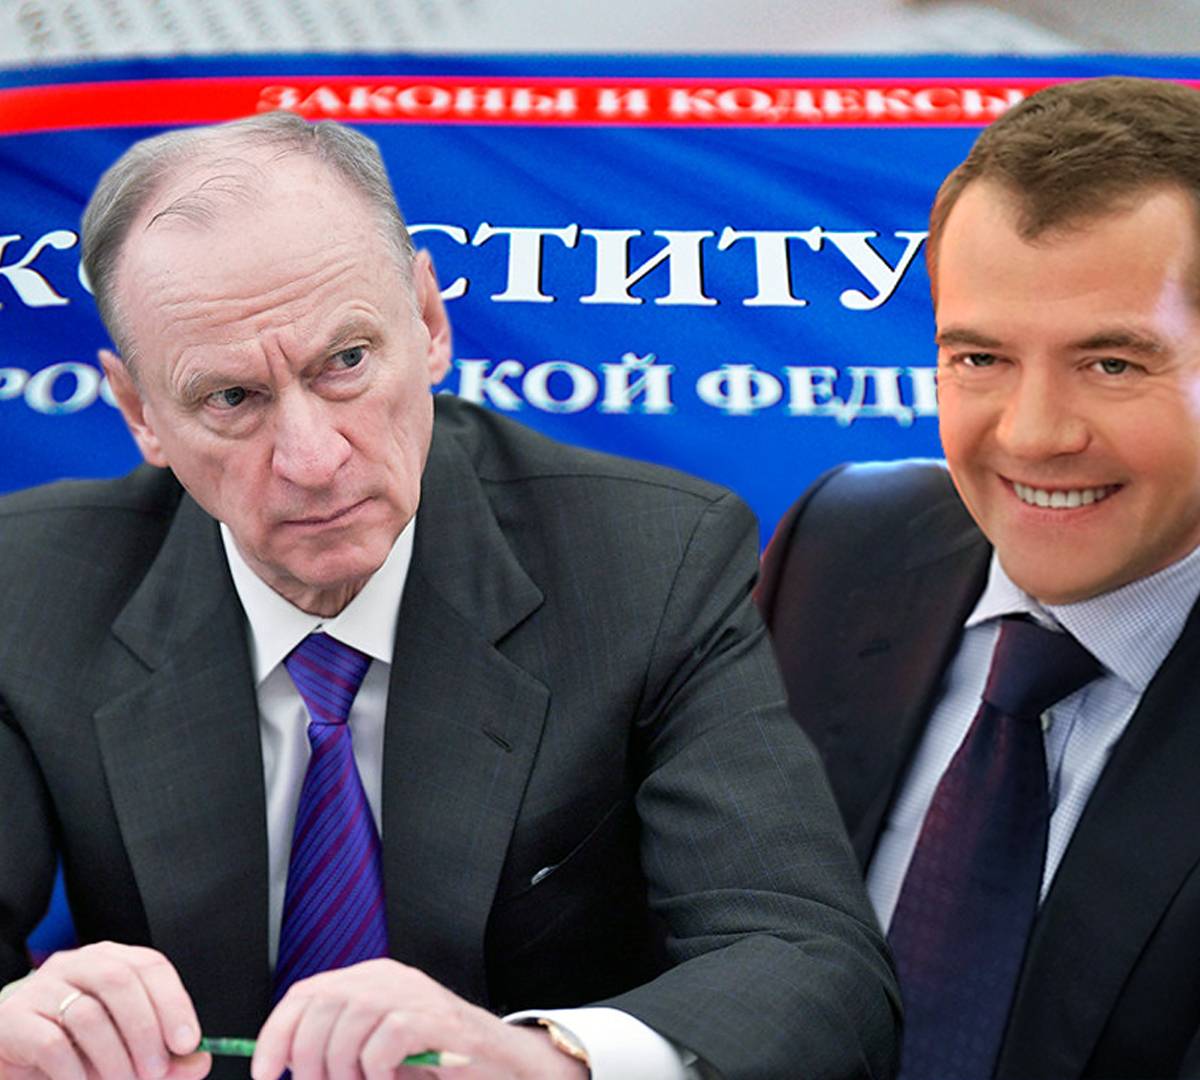 Патрушев vs Медведев: элита вспомнила о традиционных ценностях